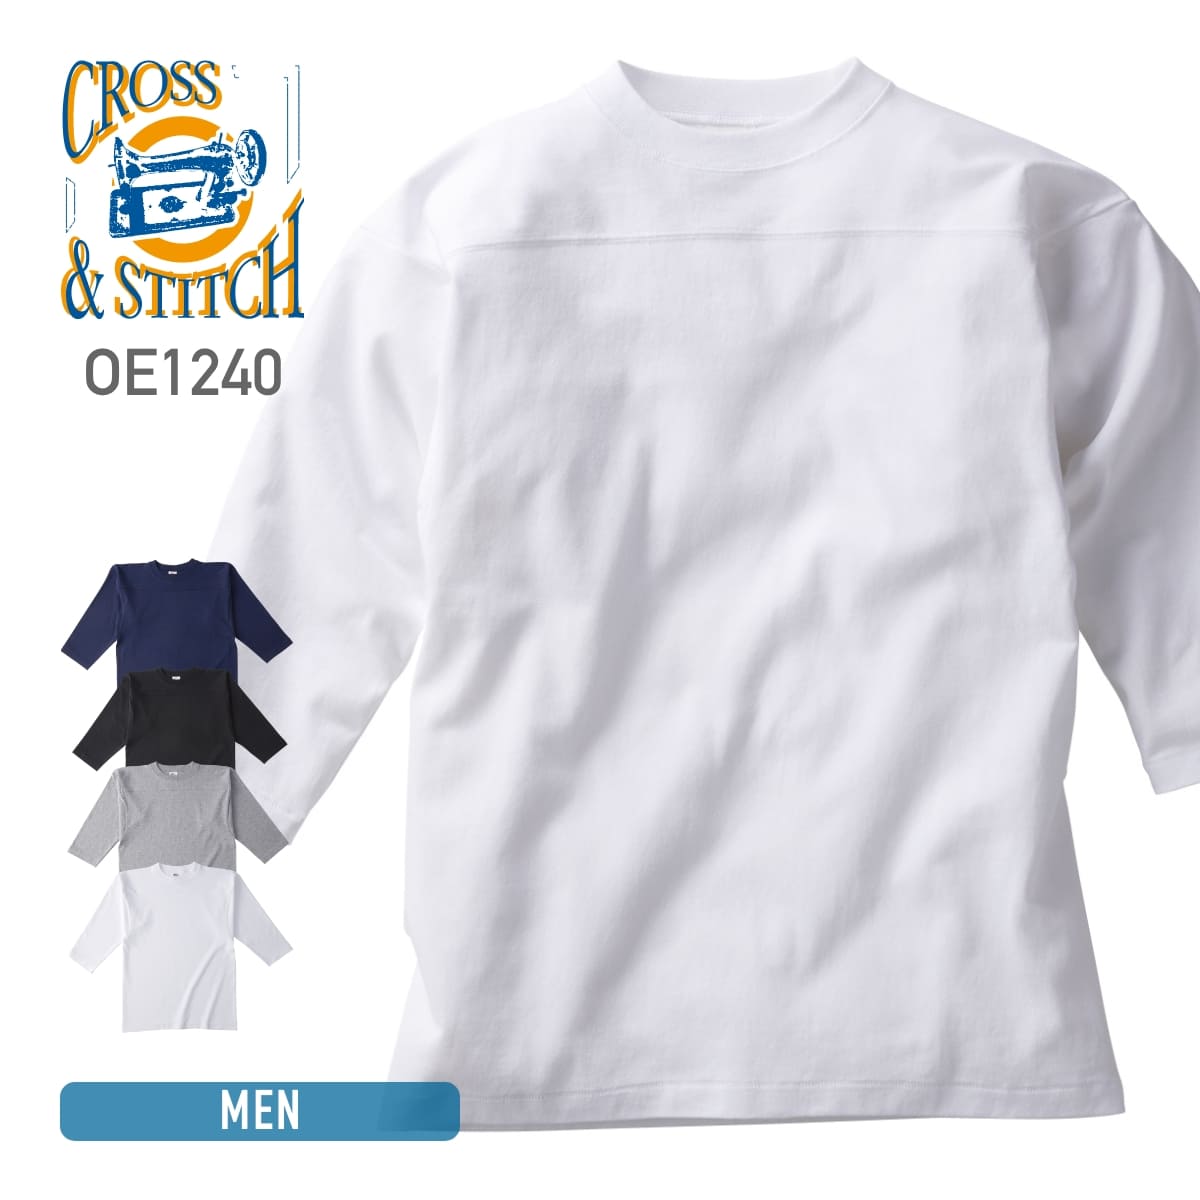 七分袖 tシャツ メンズ 半端袖 CROSS STITCH クロススティッチ 6.2オンス オープンエンド フットボールTシャツ OE1240 男女兼用 カジュアル オフショルダー